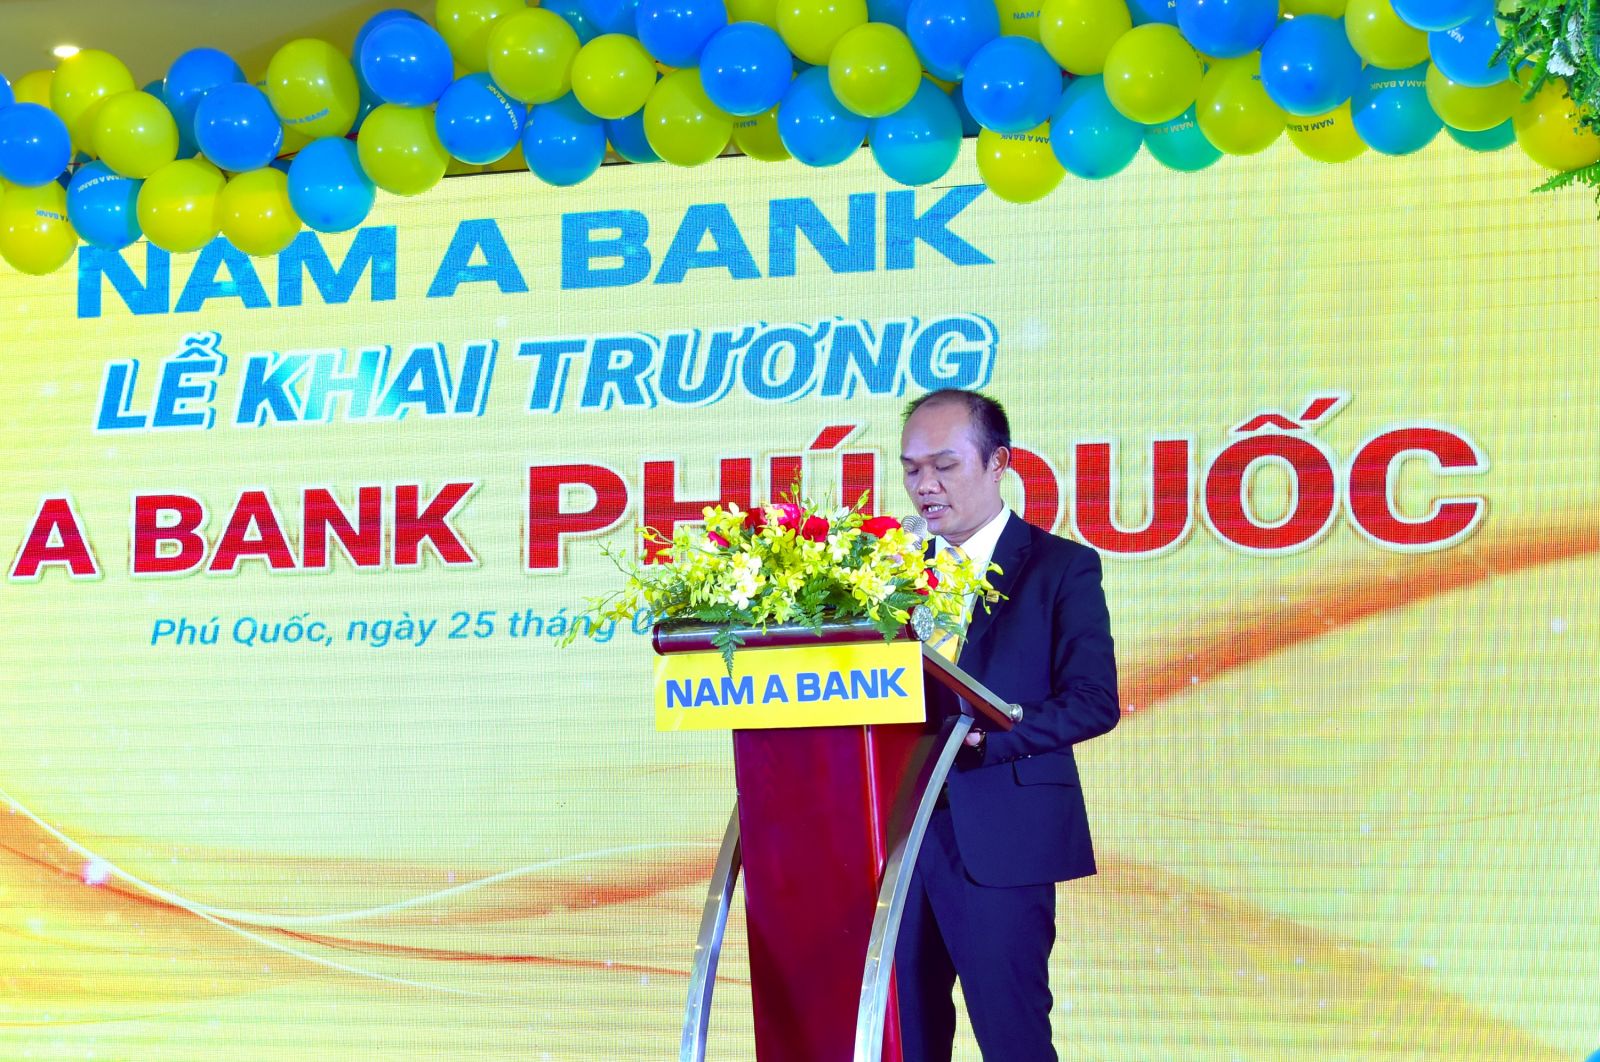 Ông Trần Quang Duy – Giám đốc Nam A Bank Phú Quốc cam kết sẽ cùng toàn đội ngũ nỗ lực mang đến sự trải nghiệm tốt nhất cho khách hàng.